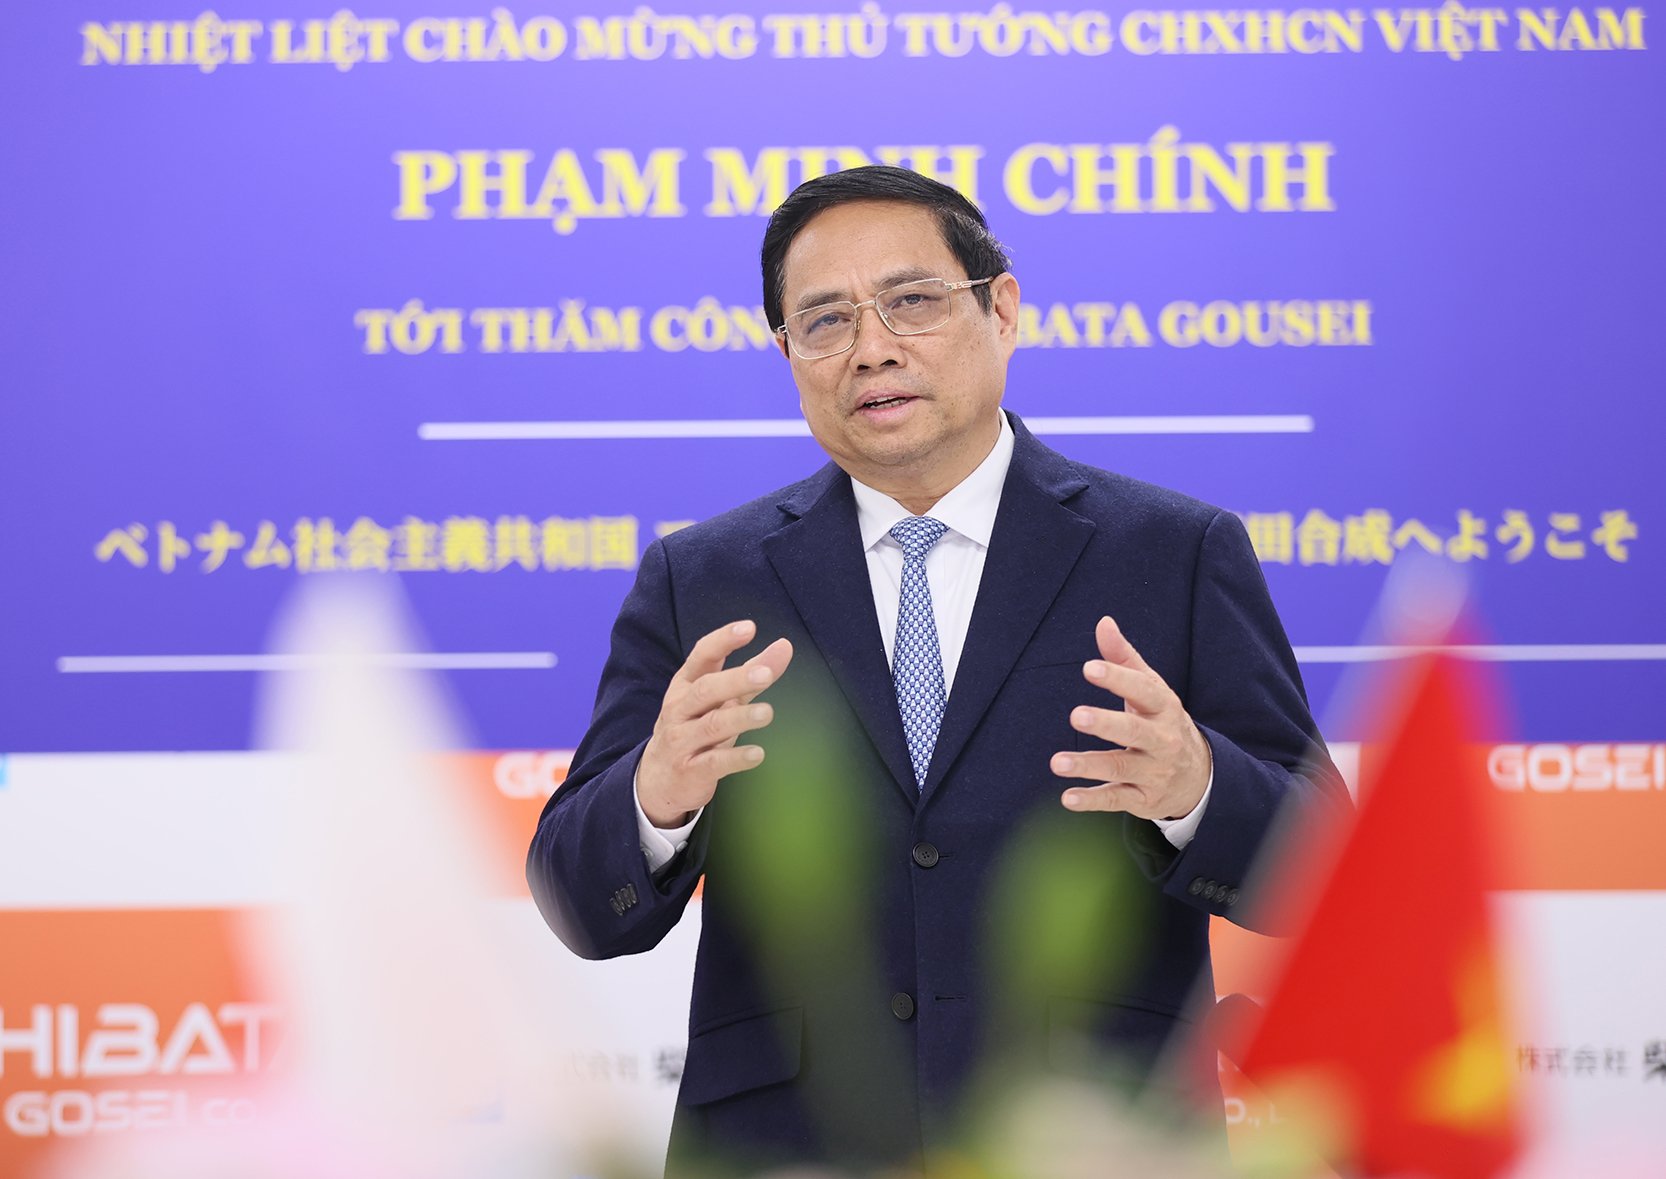 Thủ tướng Phạm Minh Chính chúc mừng, đánh giá cao sự phát triển và thành tựu đạt được của công ty trong những năm qua - Ảnh: VGP/Nhật Bắc